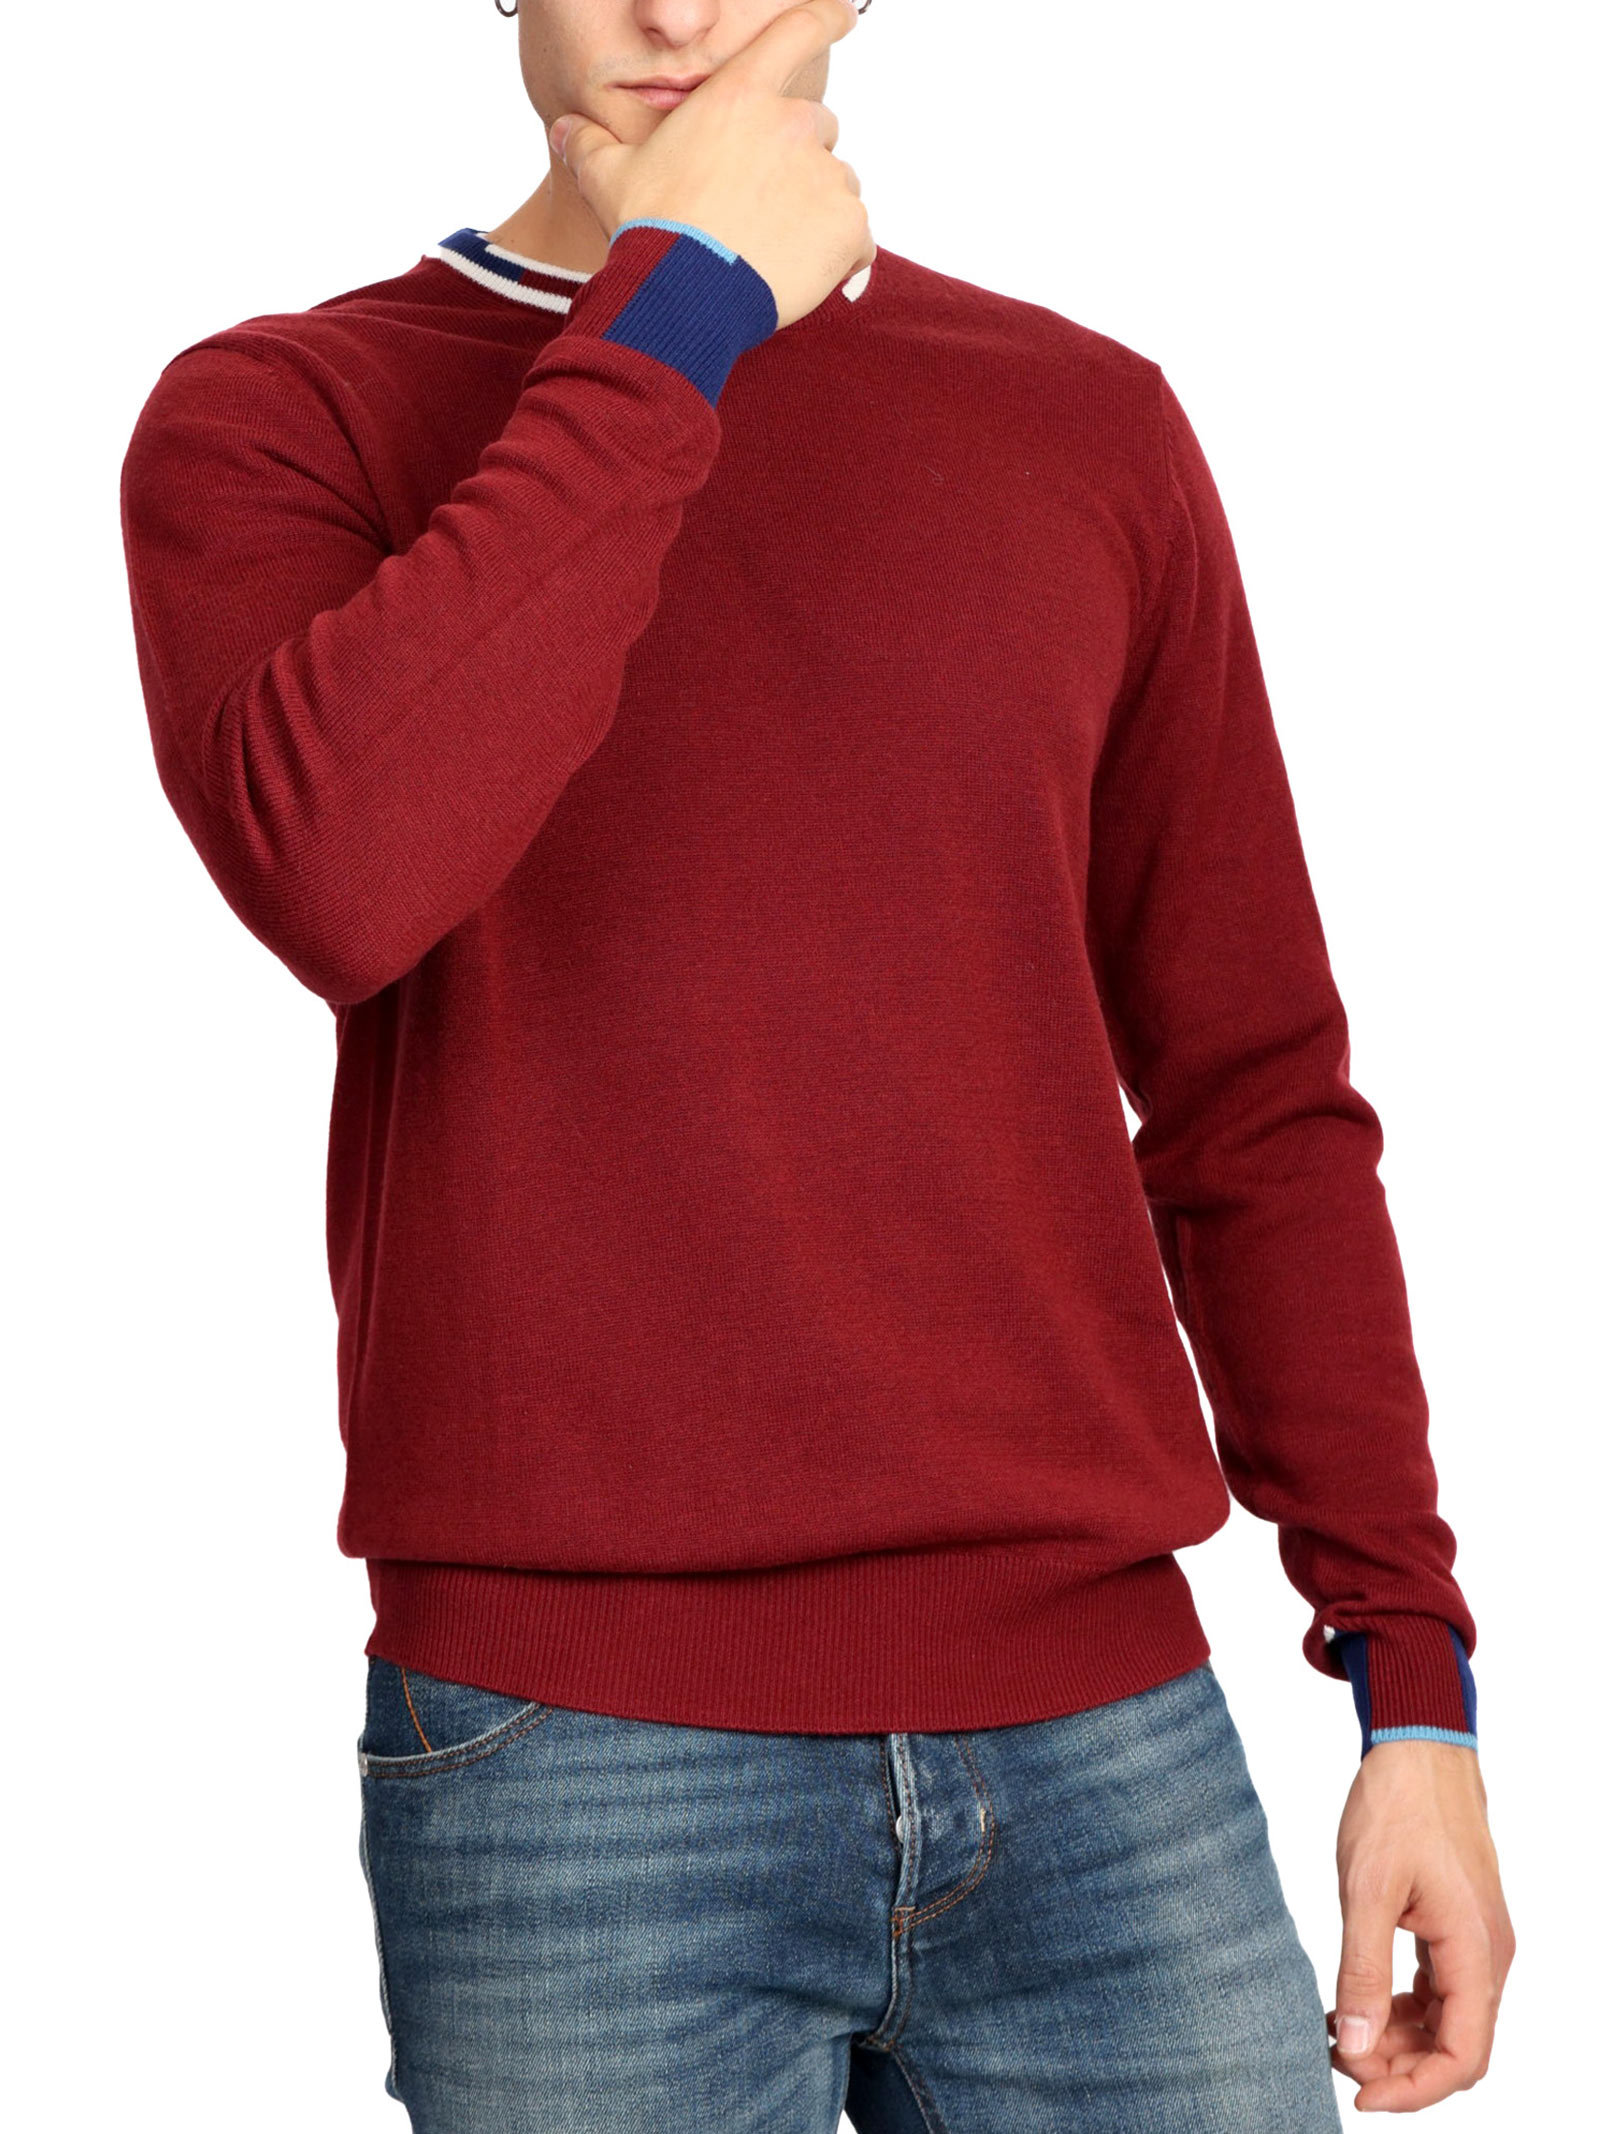 Peuterey Марлон 01 свитер, красный лилия марлон восточная 2шт